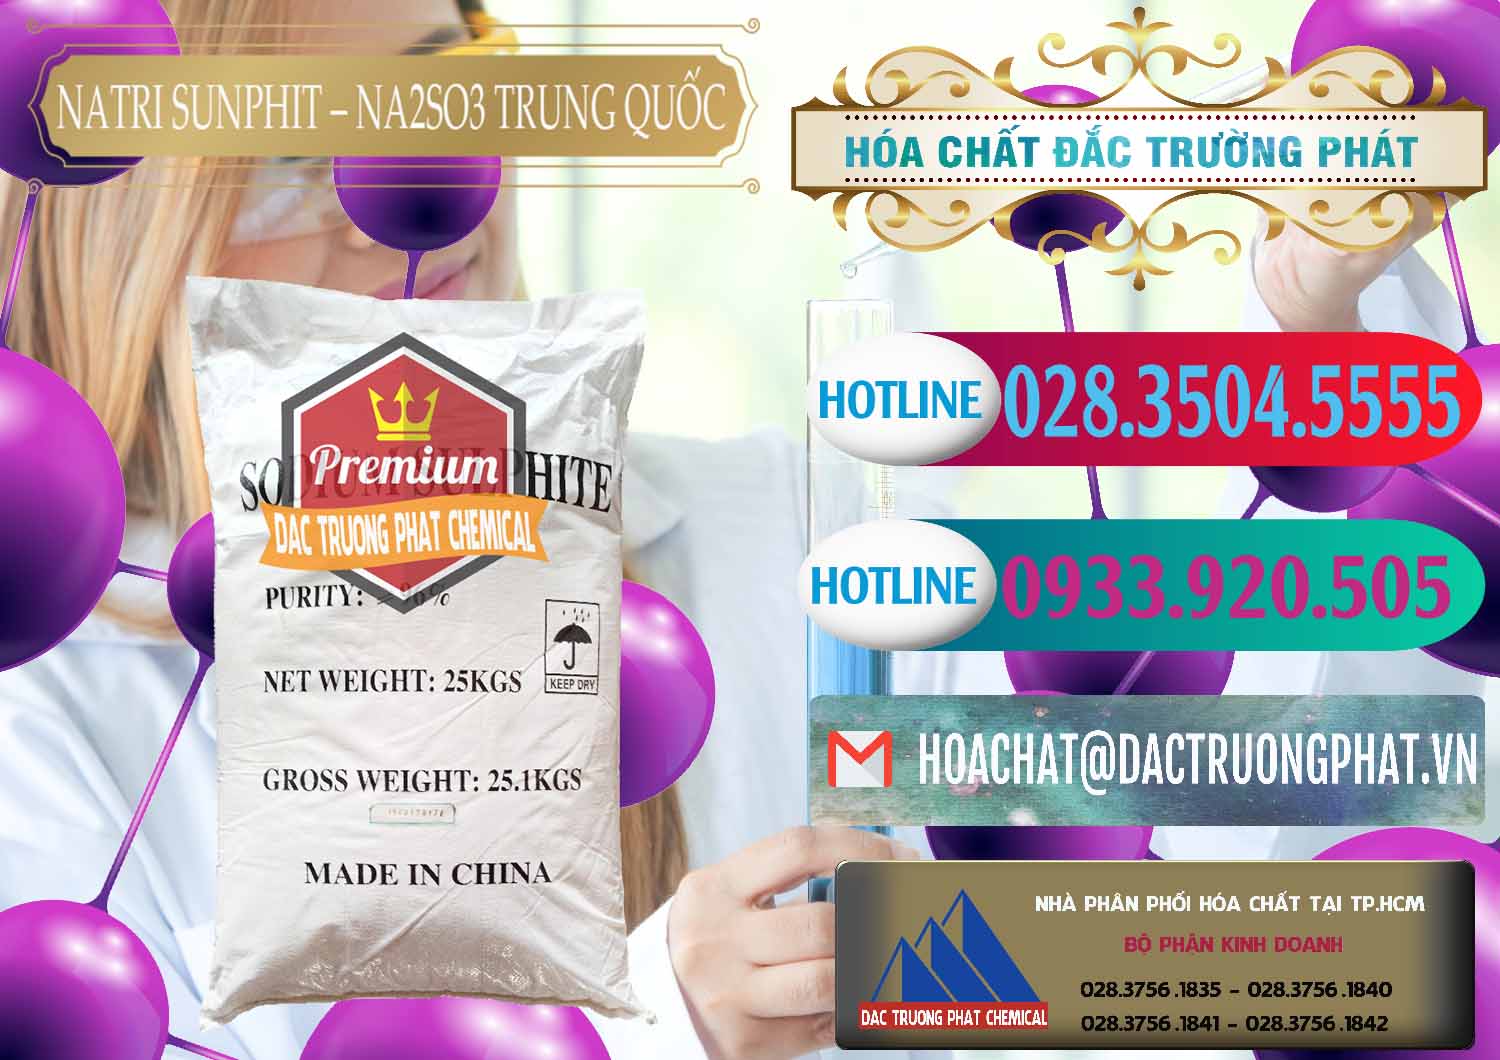 Chuyên cung cấp & bán Natri Sunphit - NA2SO3 Trung Quốc China - 0106 - Cty chuyên cung ứng & phân phối hóa chất tại TP.HCM - truongphat.vn